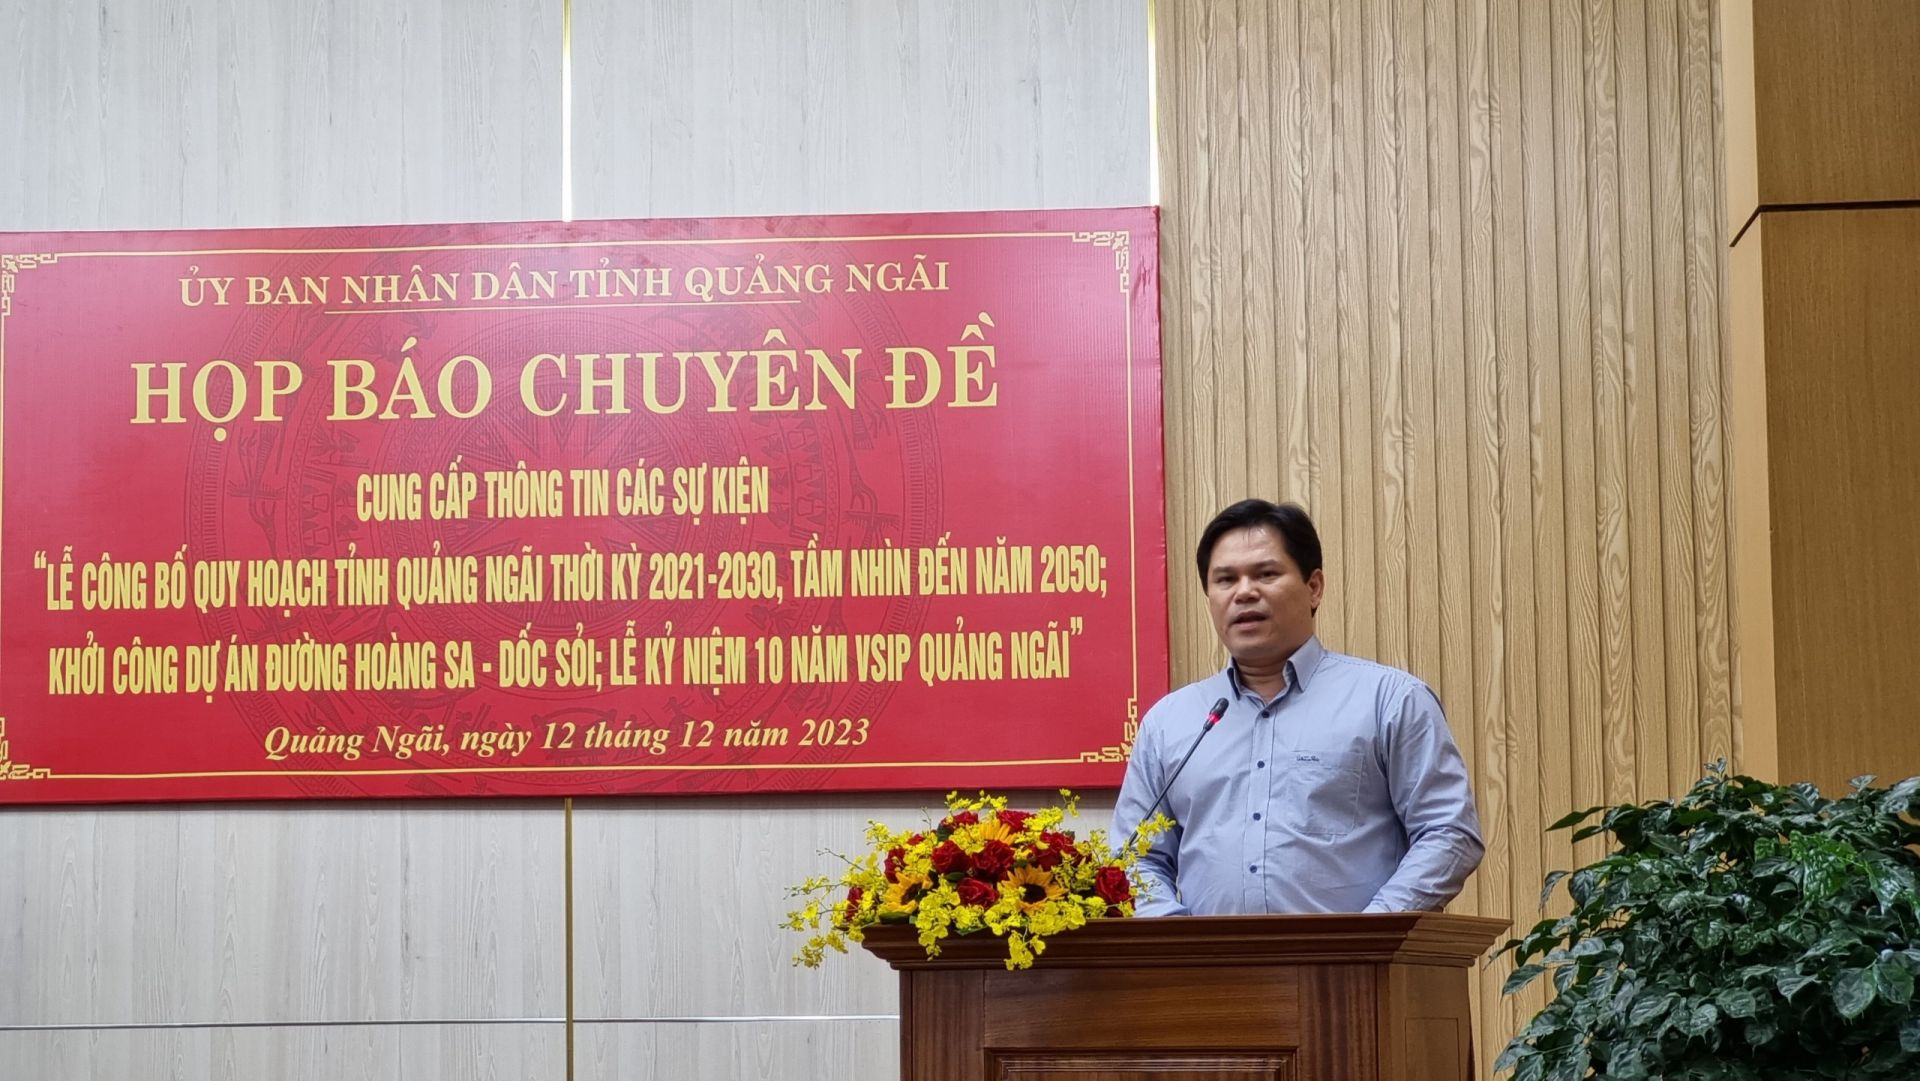 Phó Chủ tịch UBND tỉnh Trần Phước Hiền chủ trì buổi họp báo